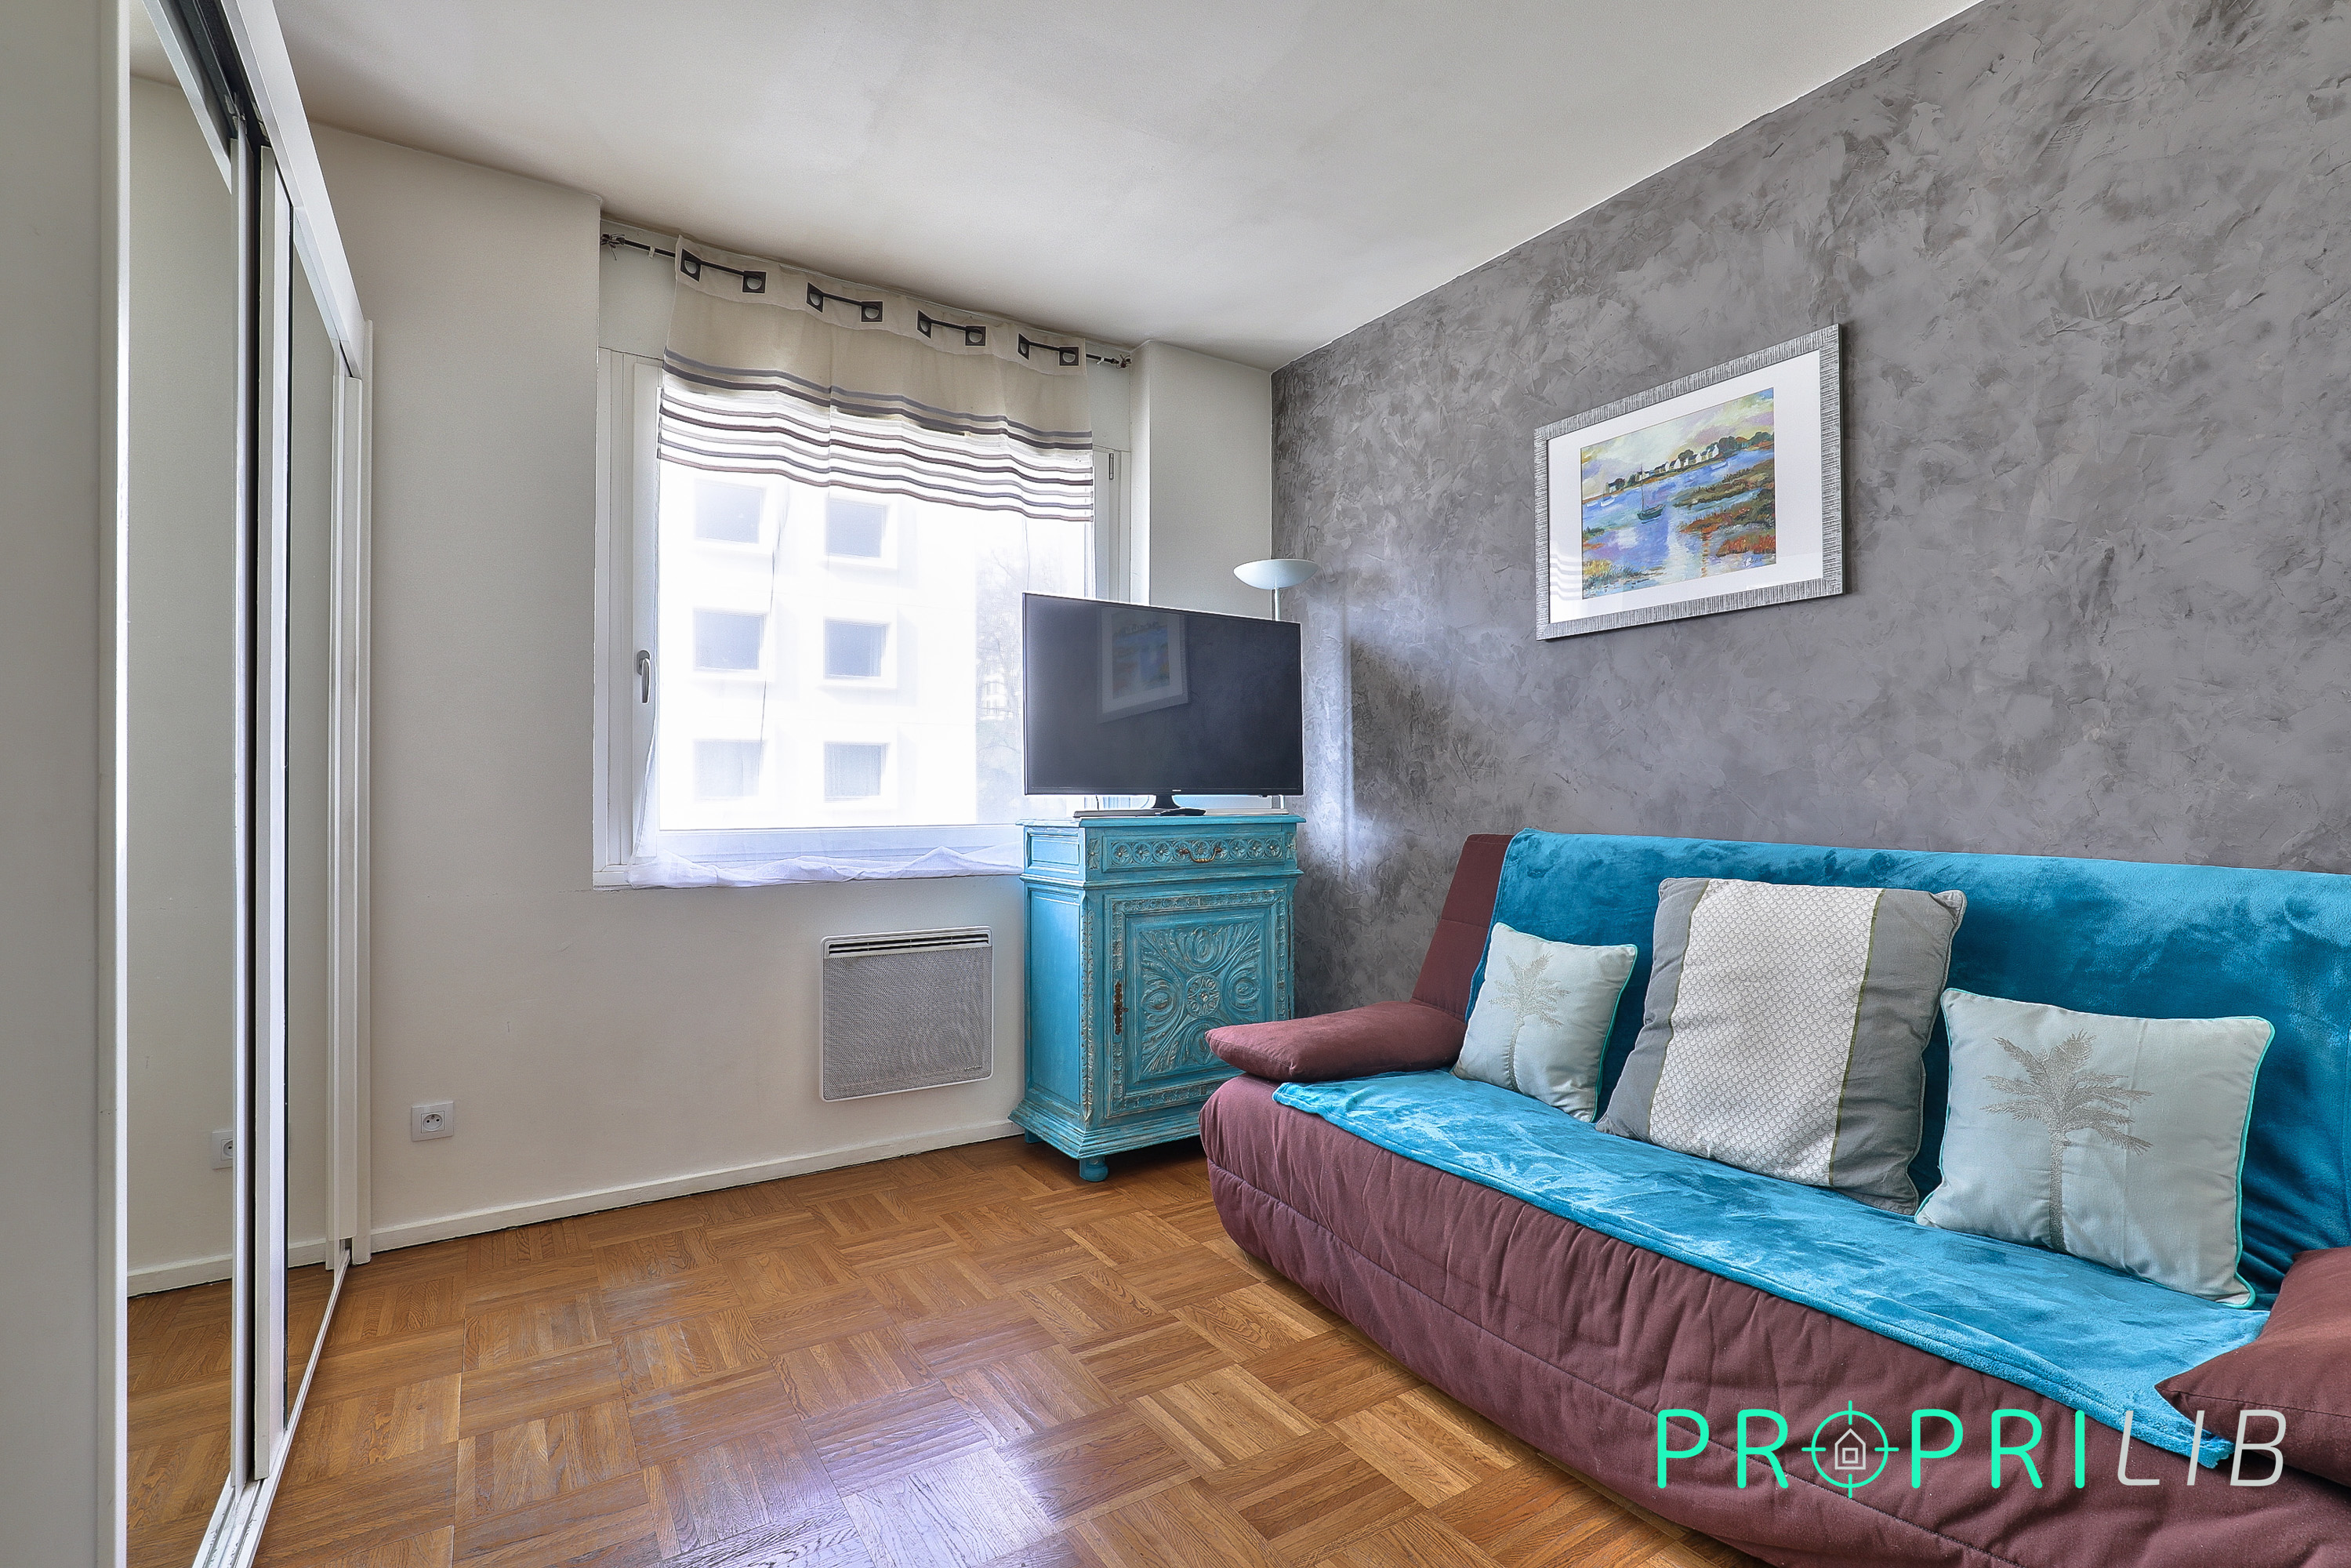 PropriLib l’agence immobilière en ligne au forfait vend cet appartement à Lyon 5ème